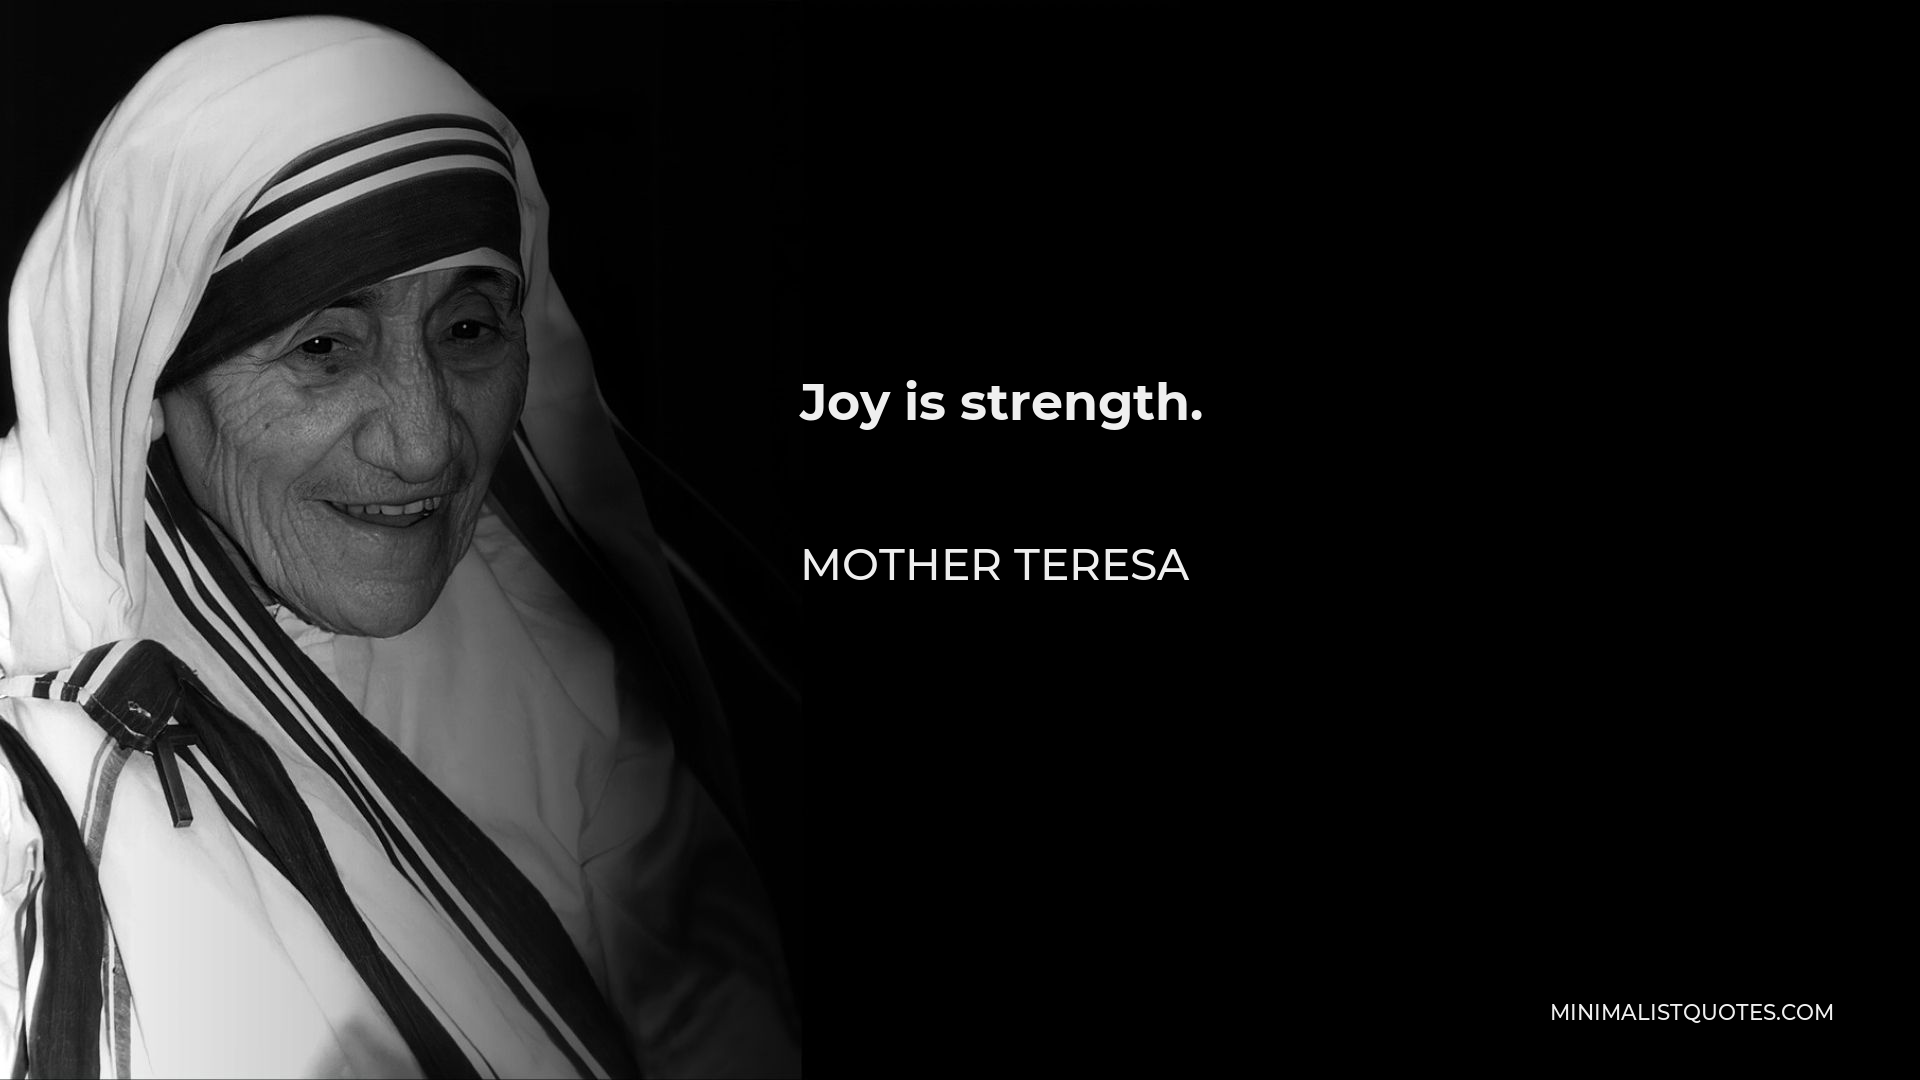 Mother Teresa Quote - Joy is strength.